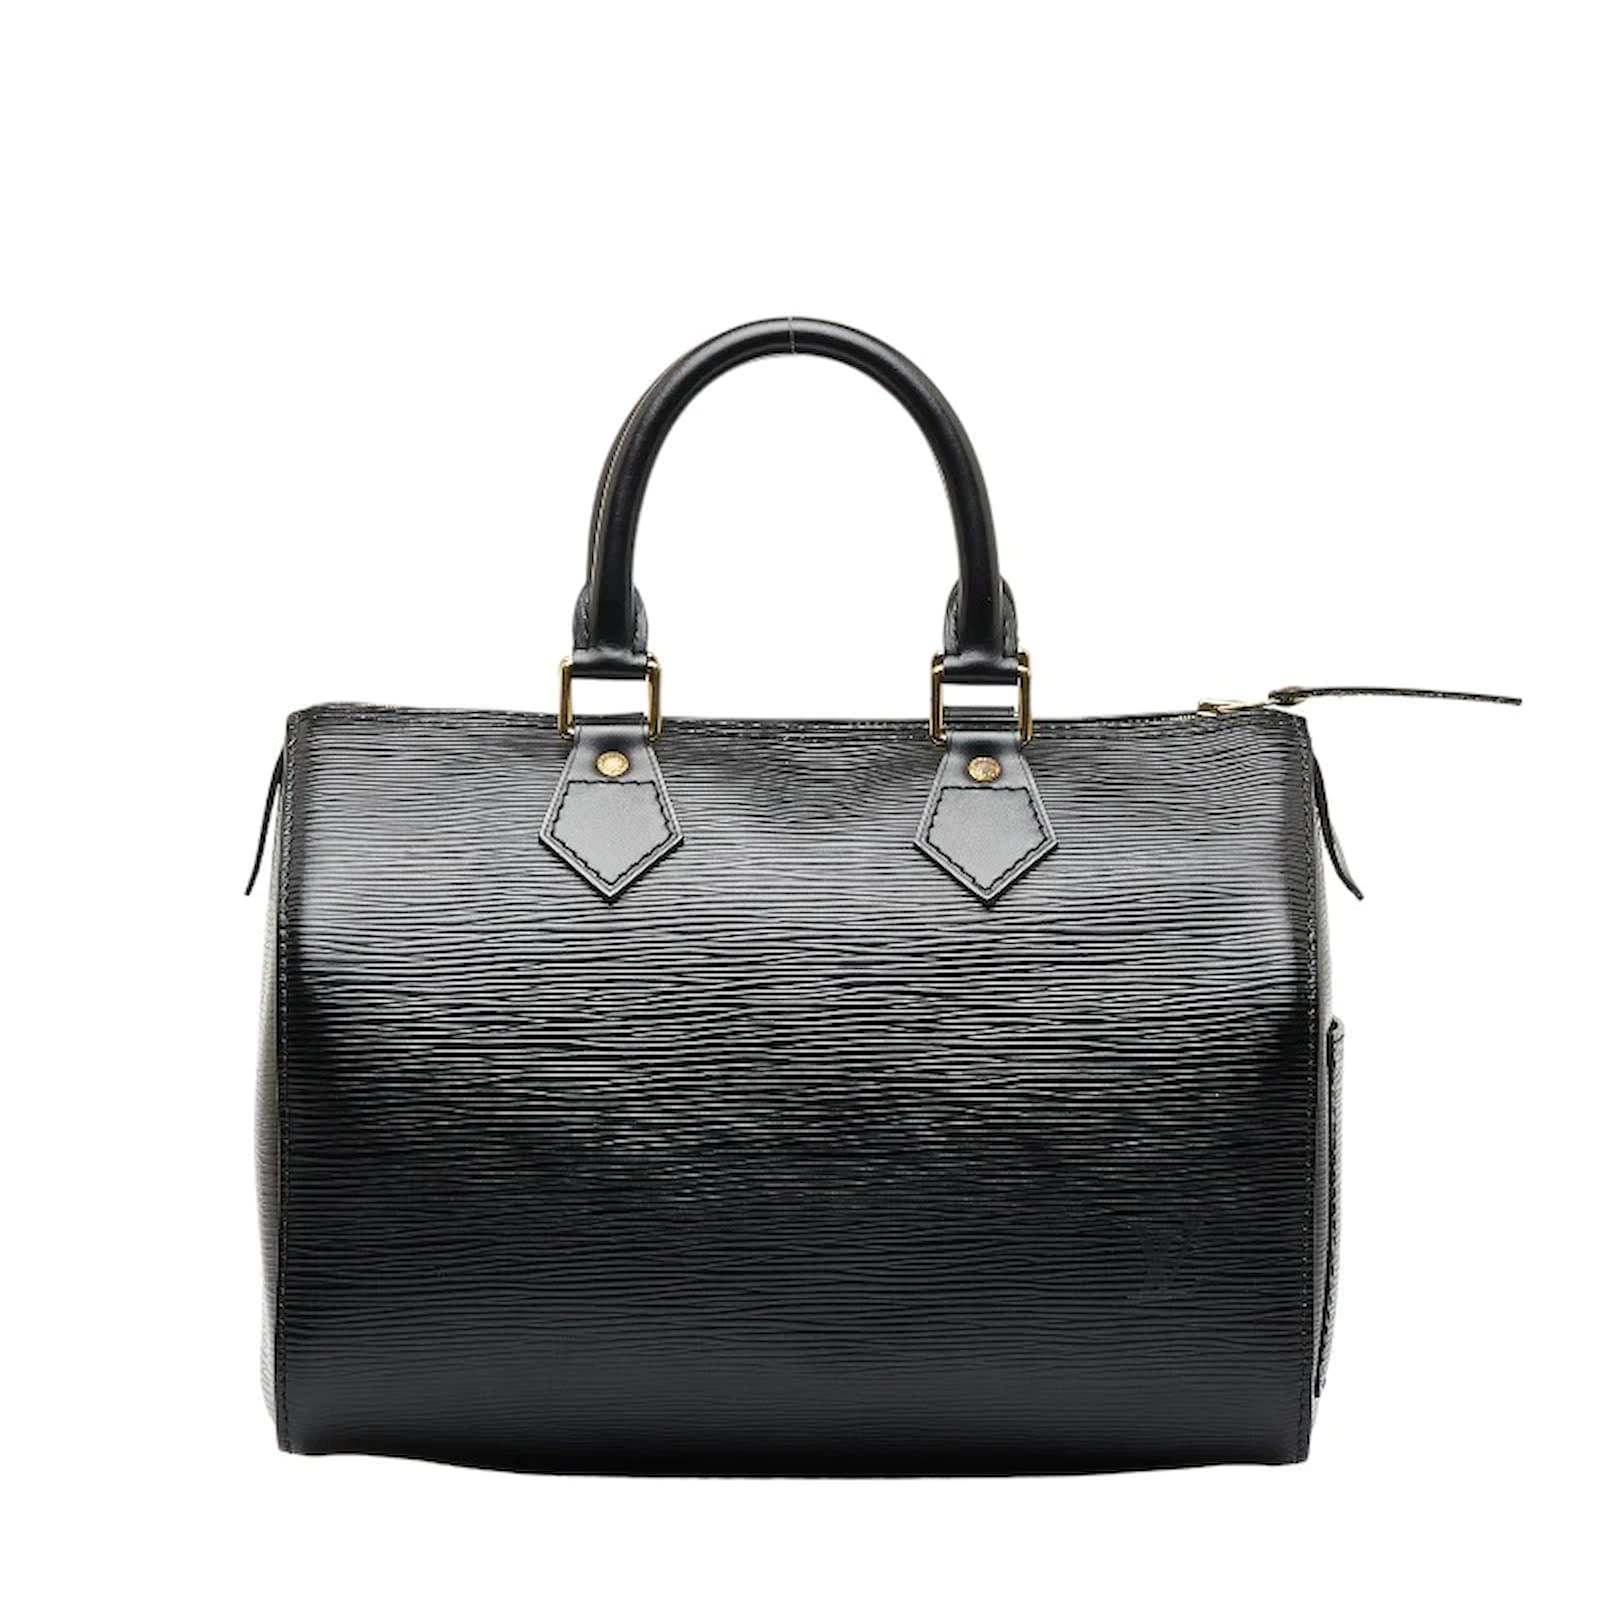 Louis Vuitton Epi Speedy 25 M43012 Black Leather Pony-style